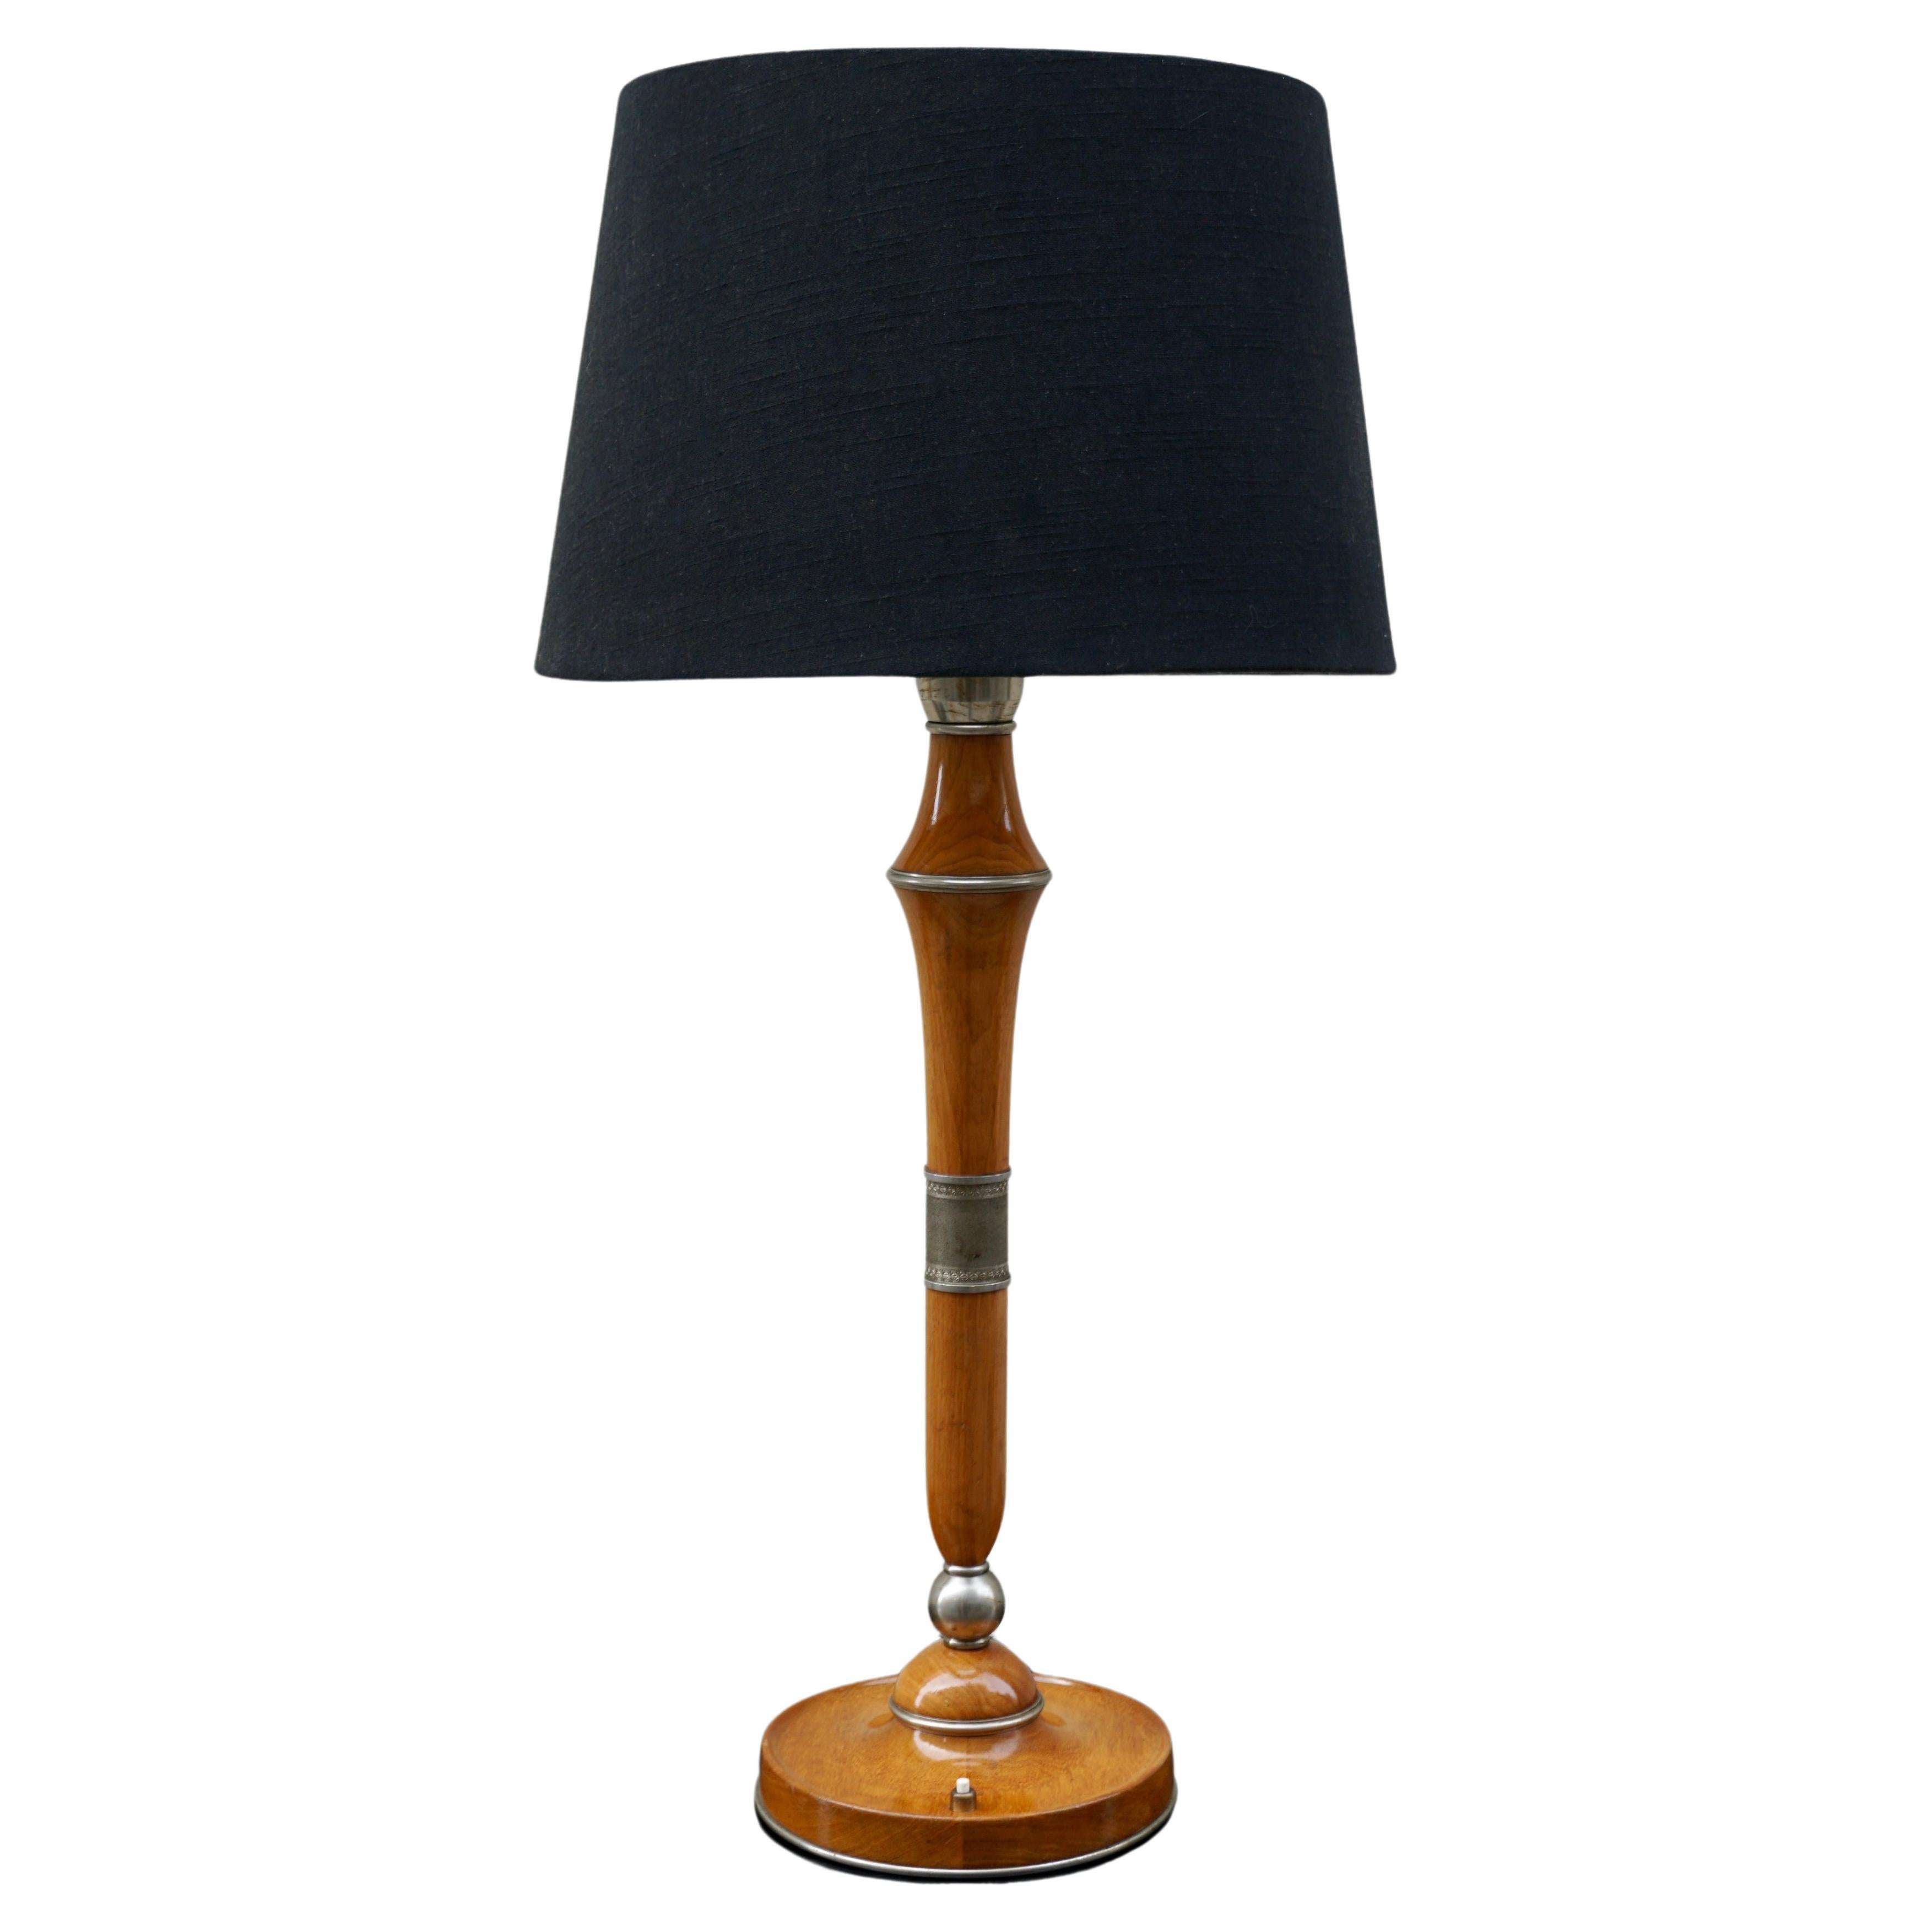 Elegant Italian Wooden Table Lamp For Sale